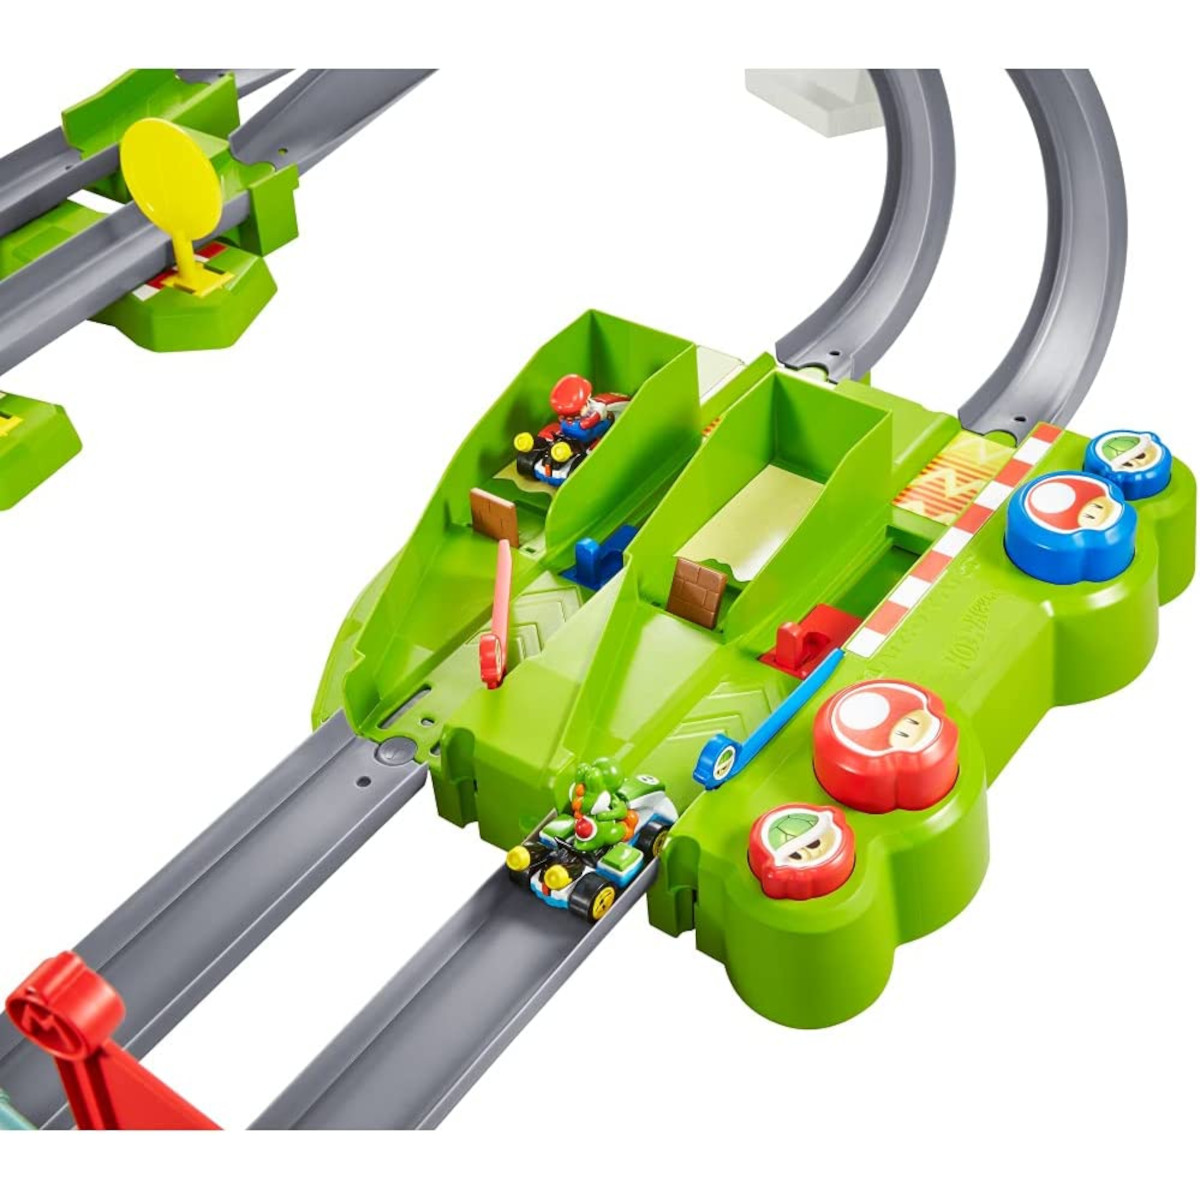 MATTEL Hot Wheels - 2 Kart Spielzeugautos Rennbahn inkl. Spielzeugrennbahn Mario